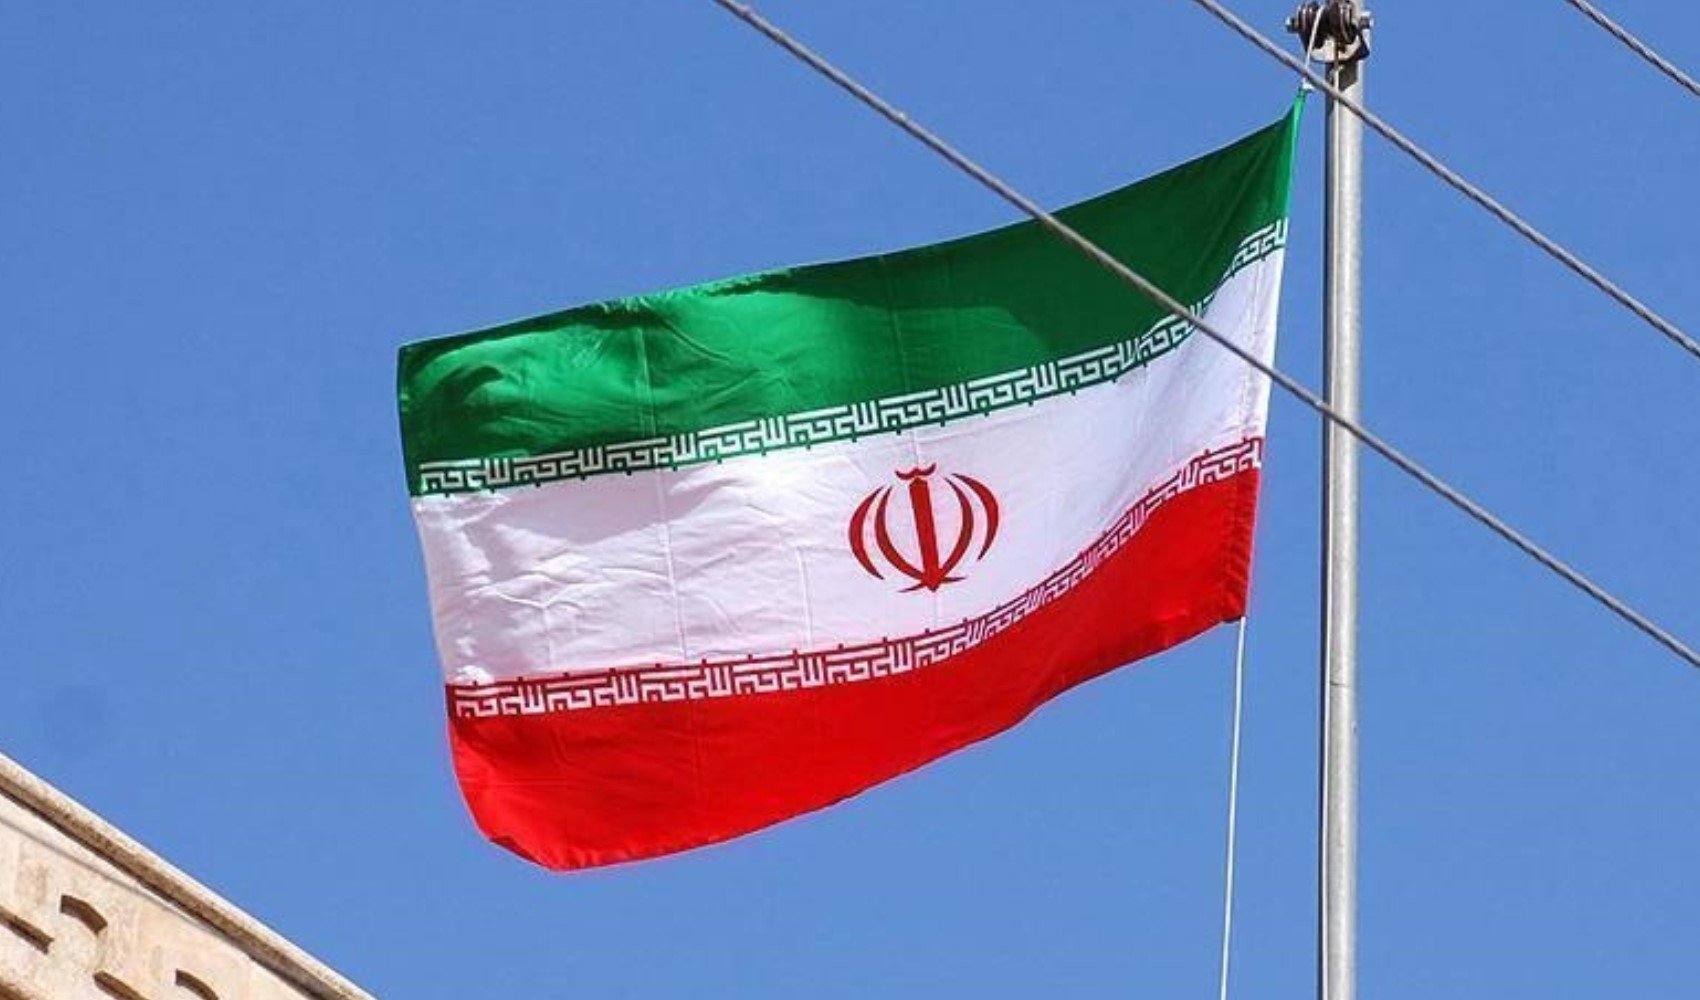 İran'da Cumhurbaşkanı Yardımcısı Davud Menzur, cumhurbaşkanlığı seçimlerinde adaylıktan çekildi